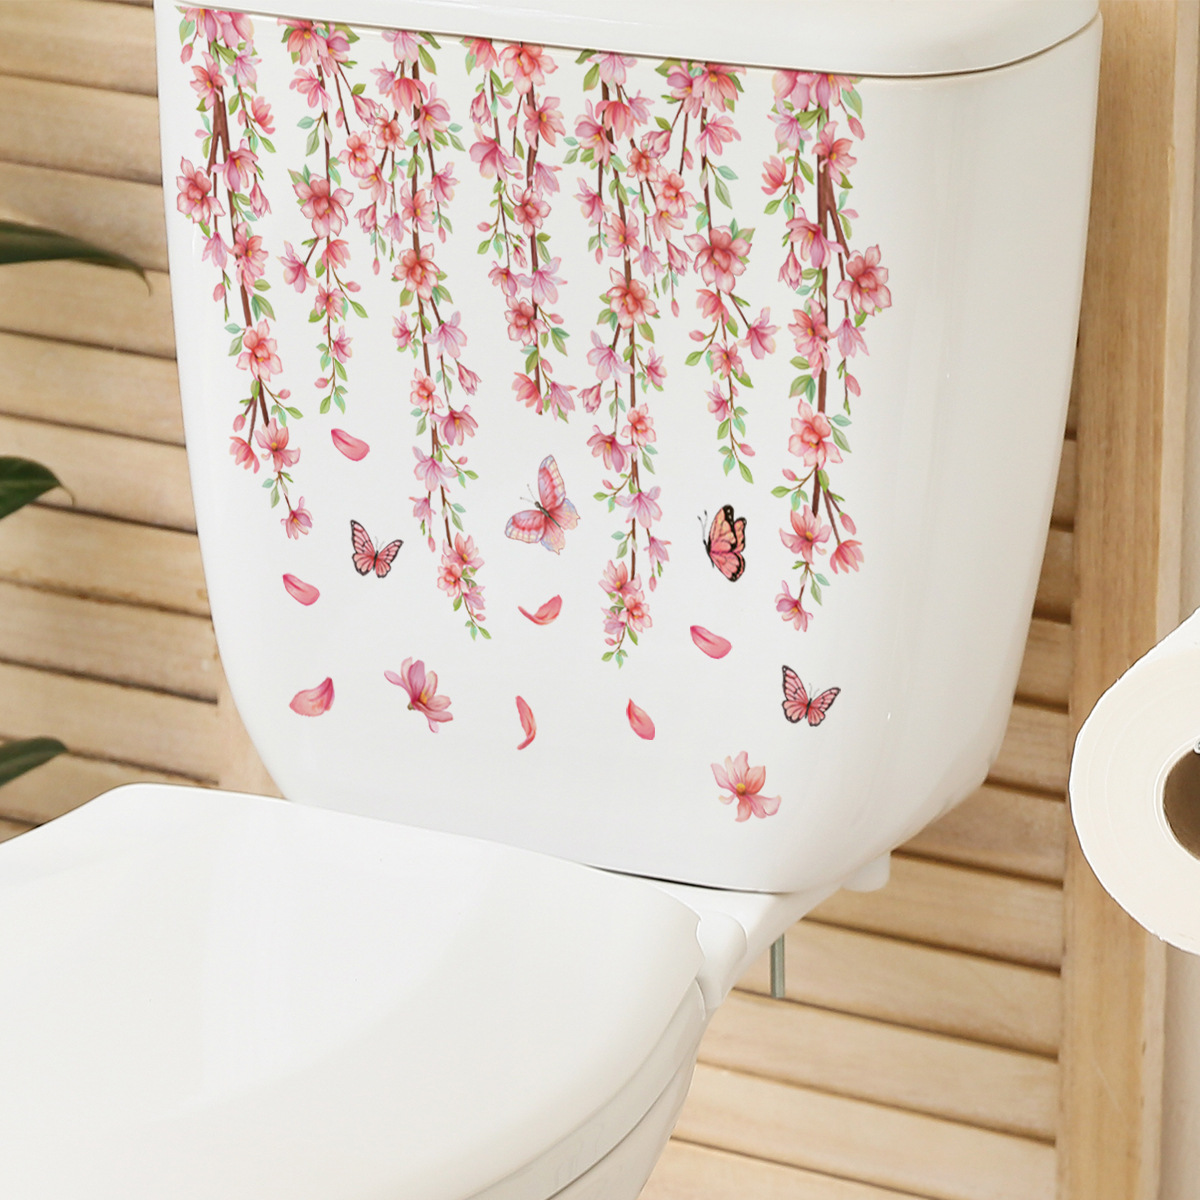 M21 plantes fleurs papillons autocollants de toilette de salle de bain couvercle de toilette autocollant réfrigérateur mural autocollants wc pour décoration domestique